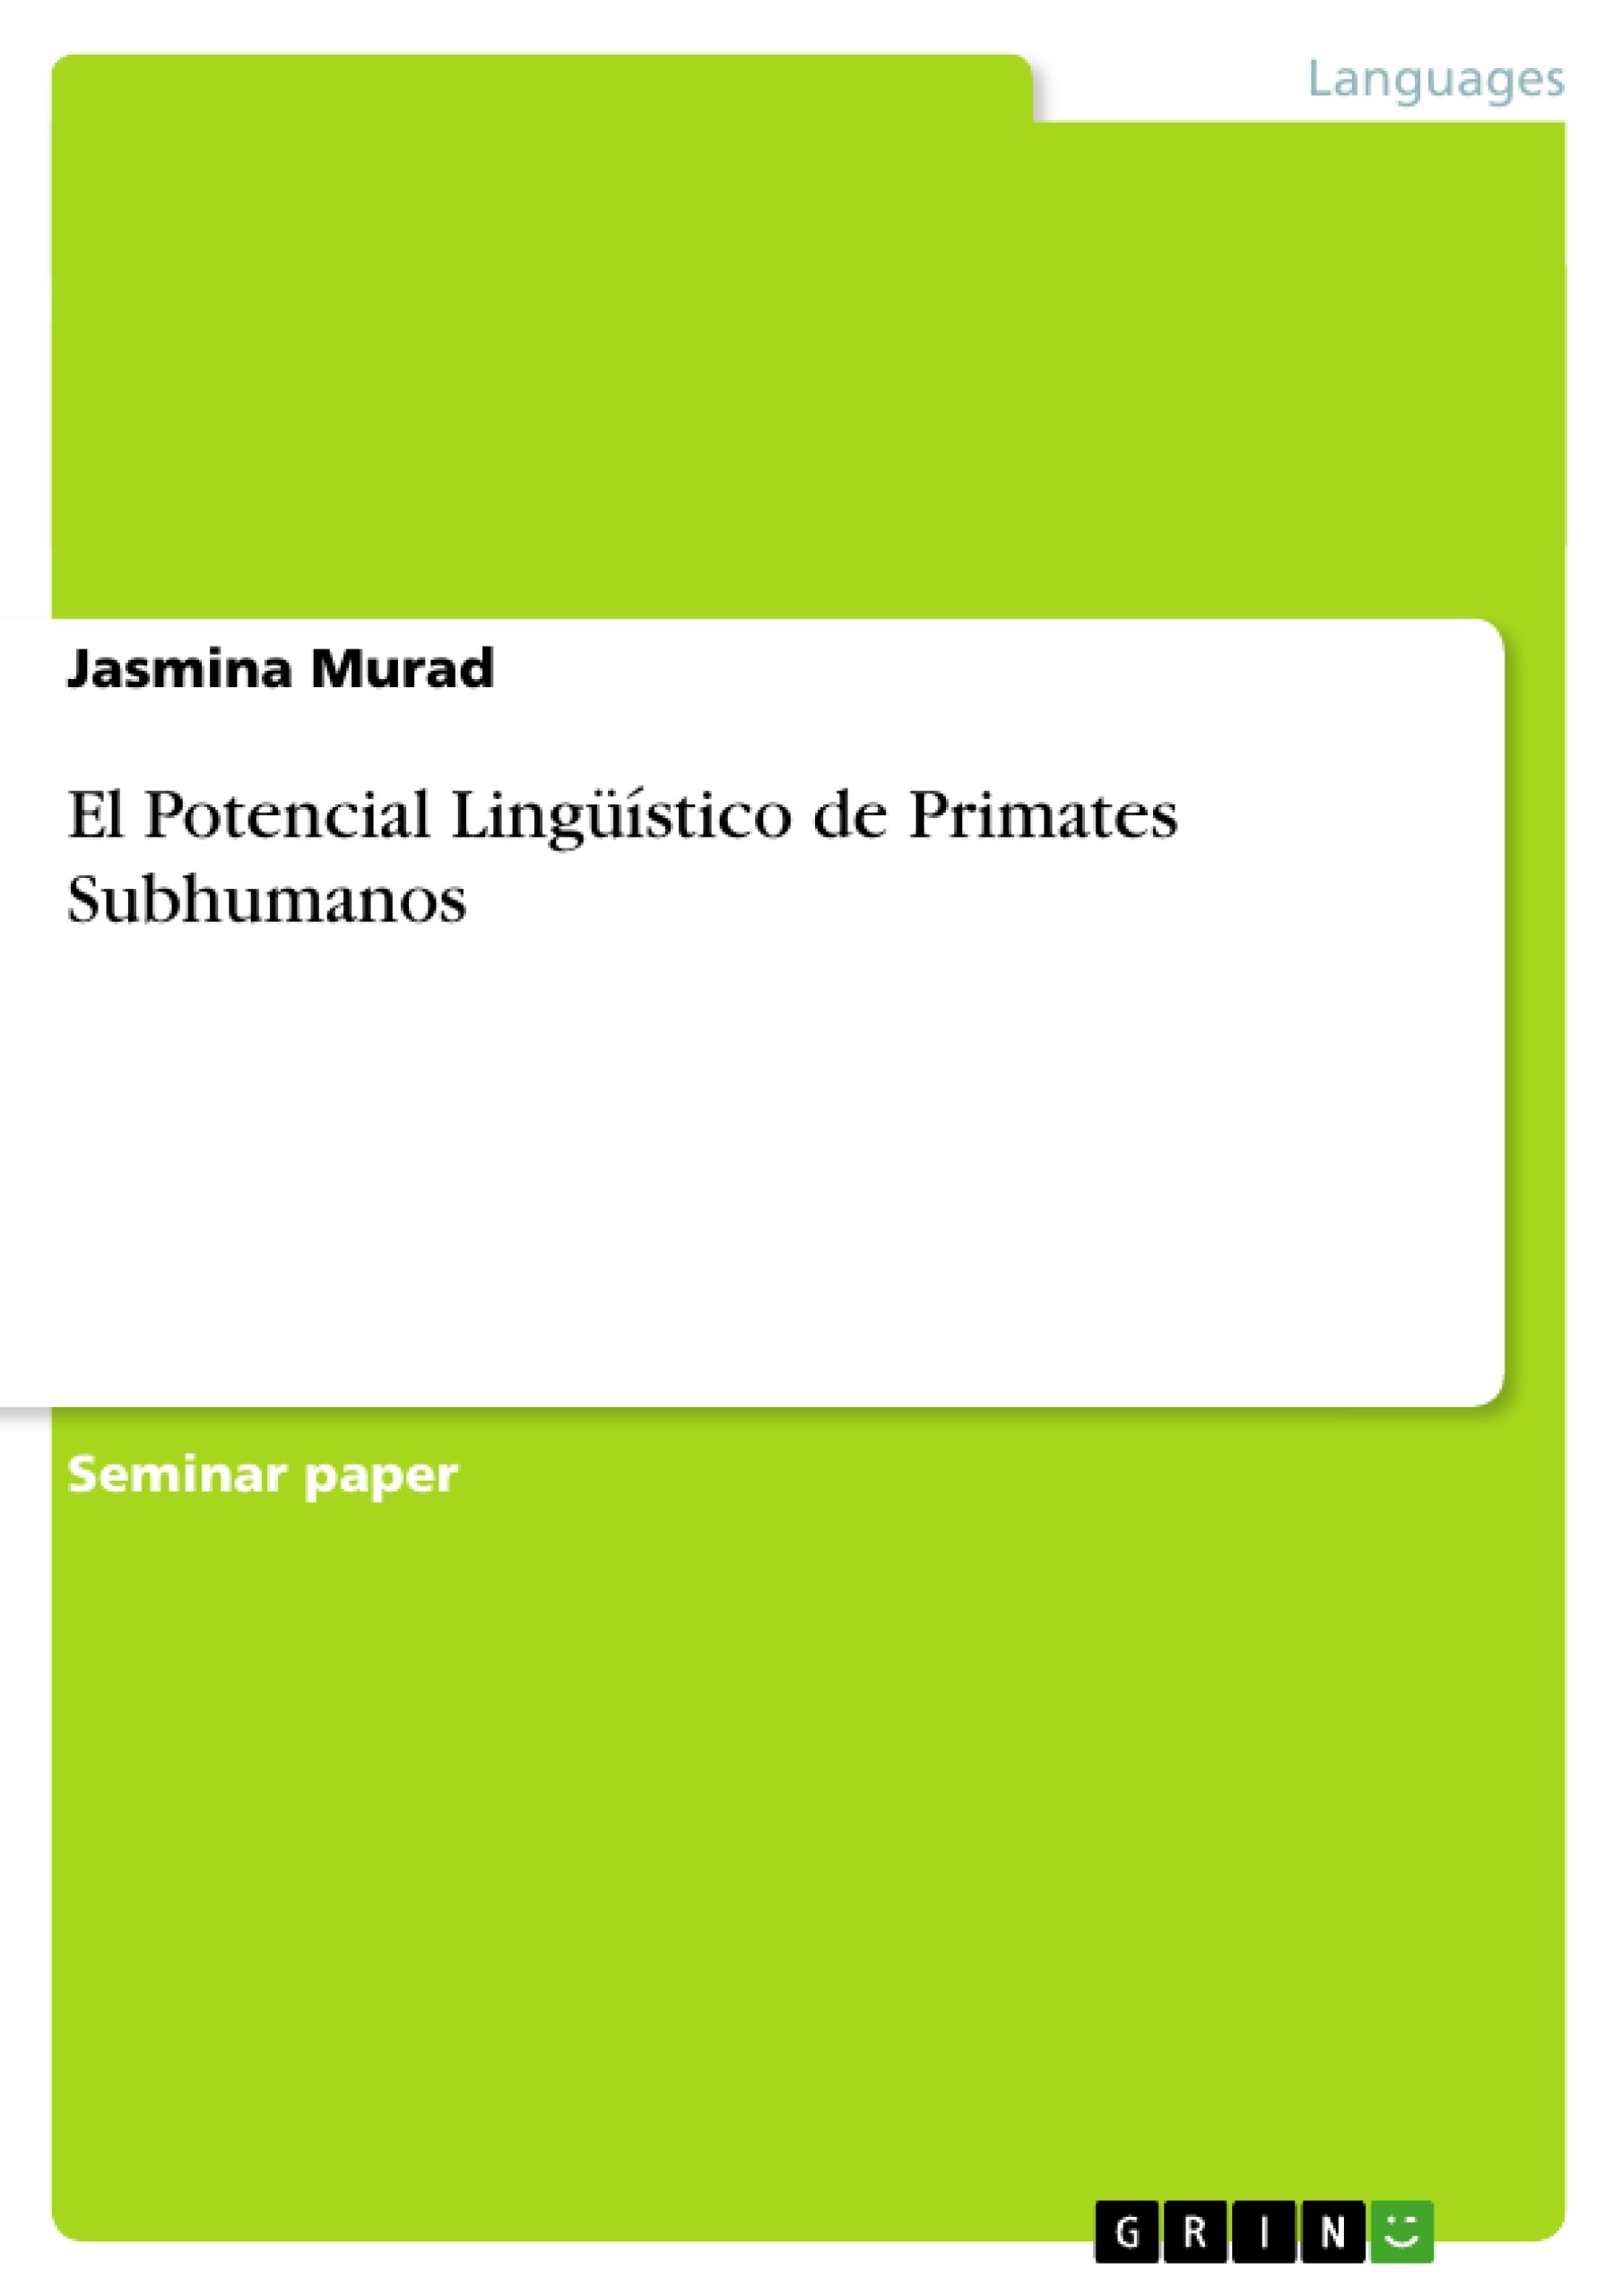 Title: El Potencial Lingüístico de Primates Subhumanos